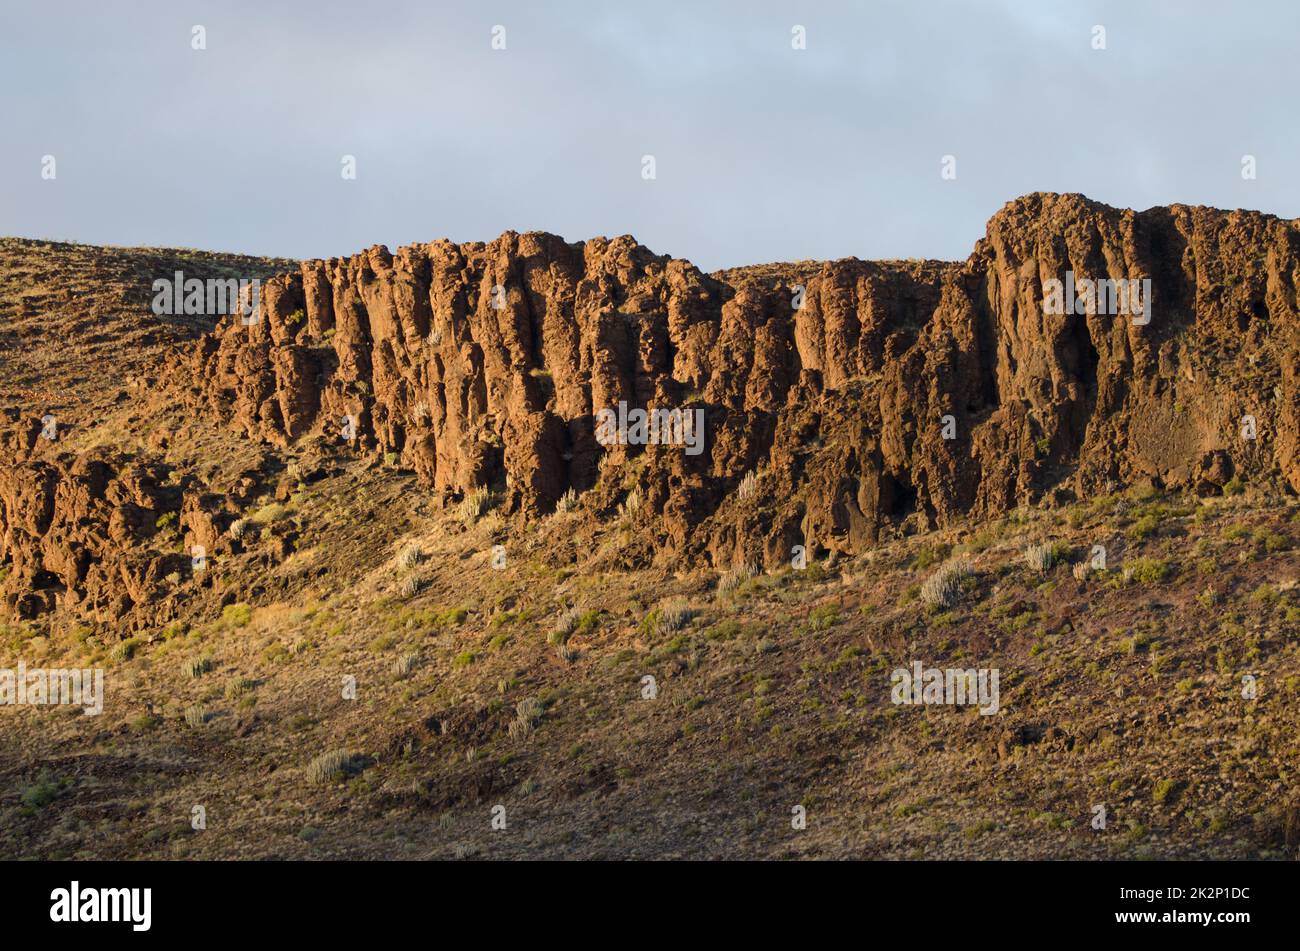 Acantilado rocoso en una ladera. Foto de stock